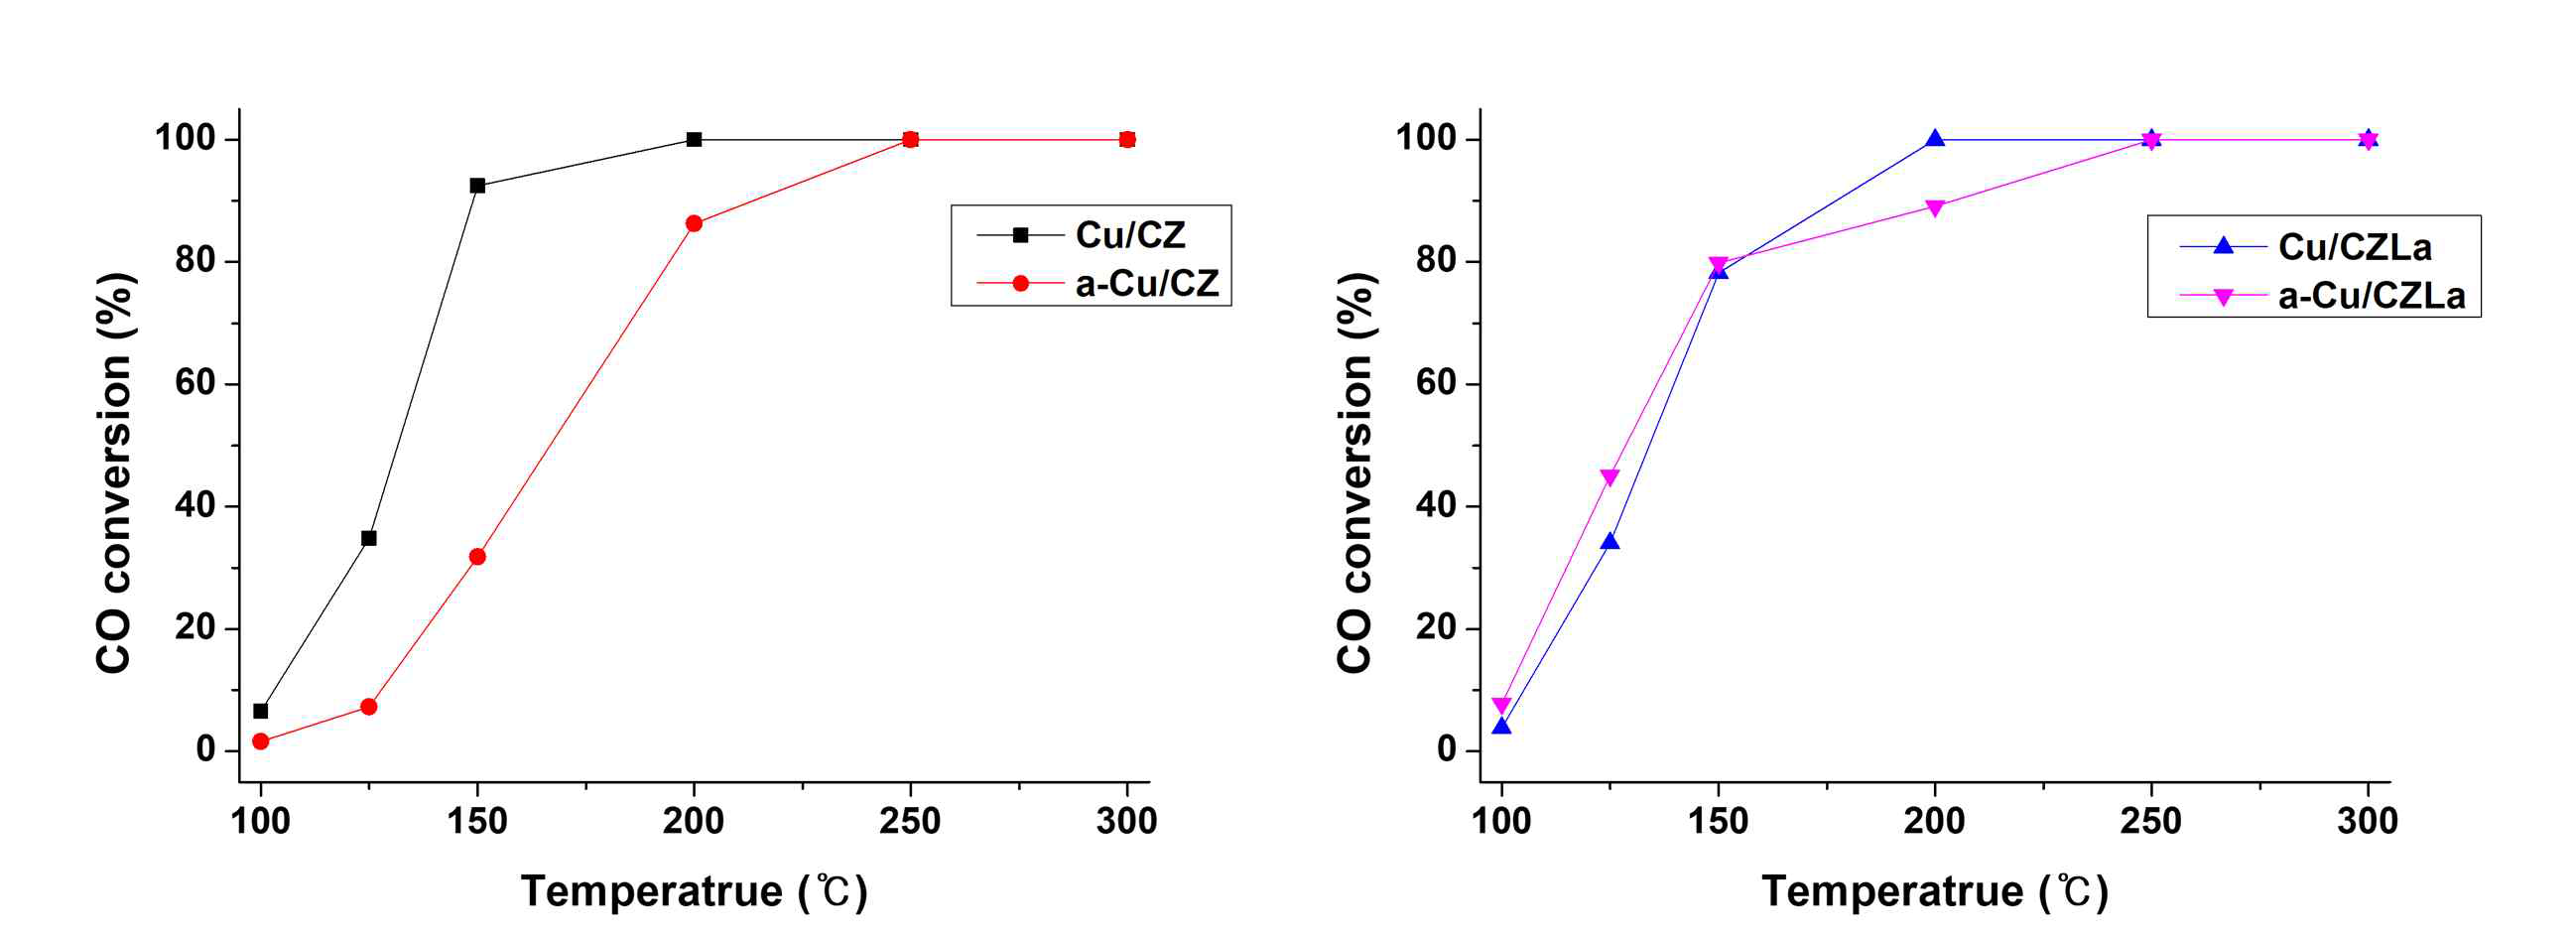 CZ 기반 촉매를 이용한 CO 산화반응